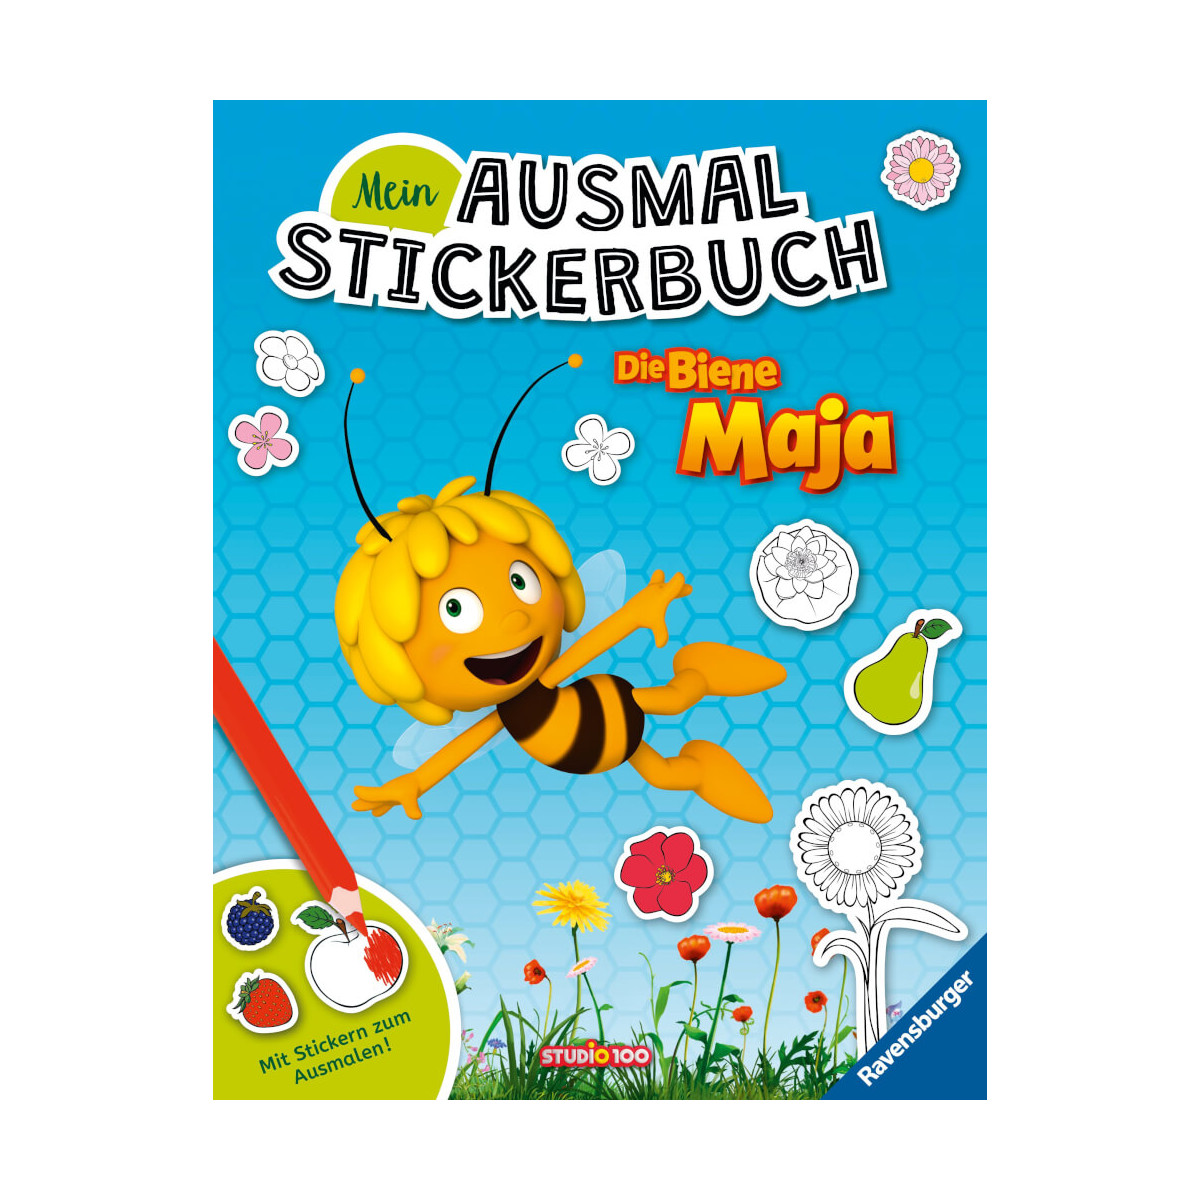 Ravensburger Mein Ausmalstickerbuch Die Biene Maja – Großes Buch mit über 250 Stickern, viele Sticke